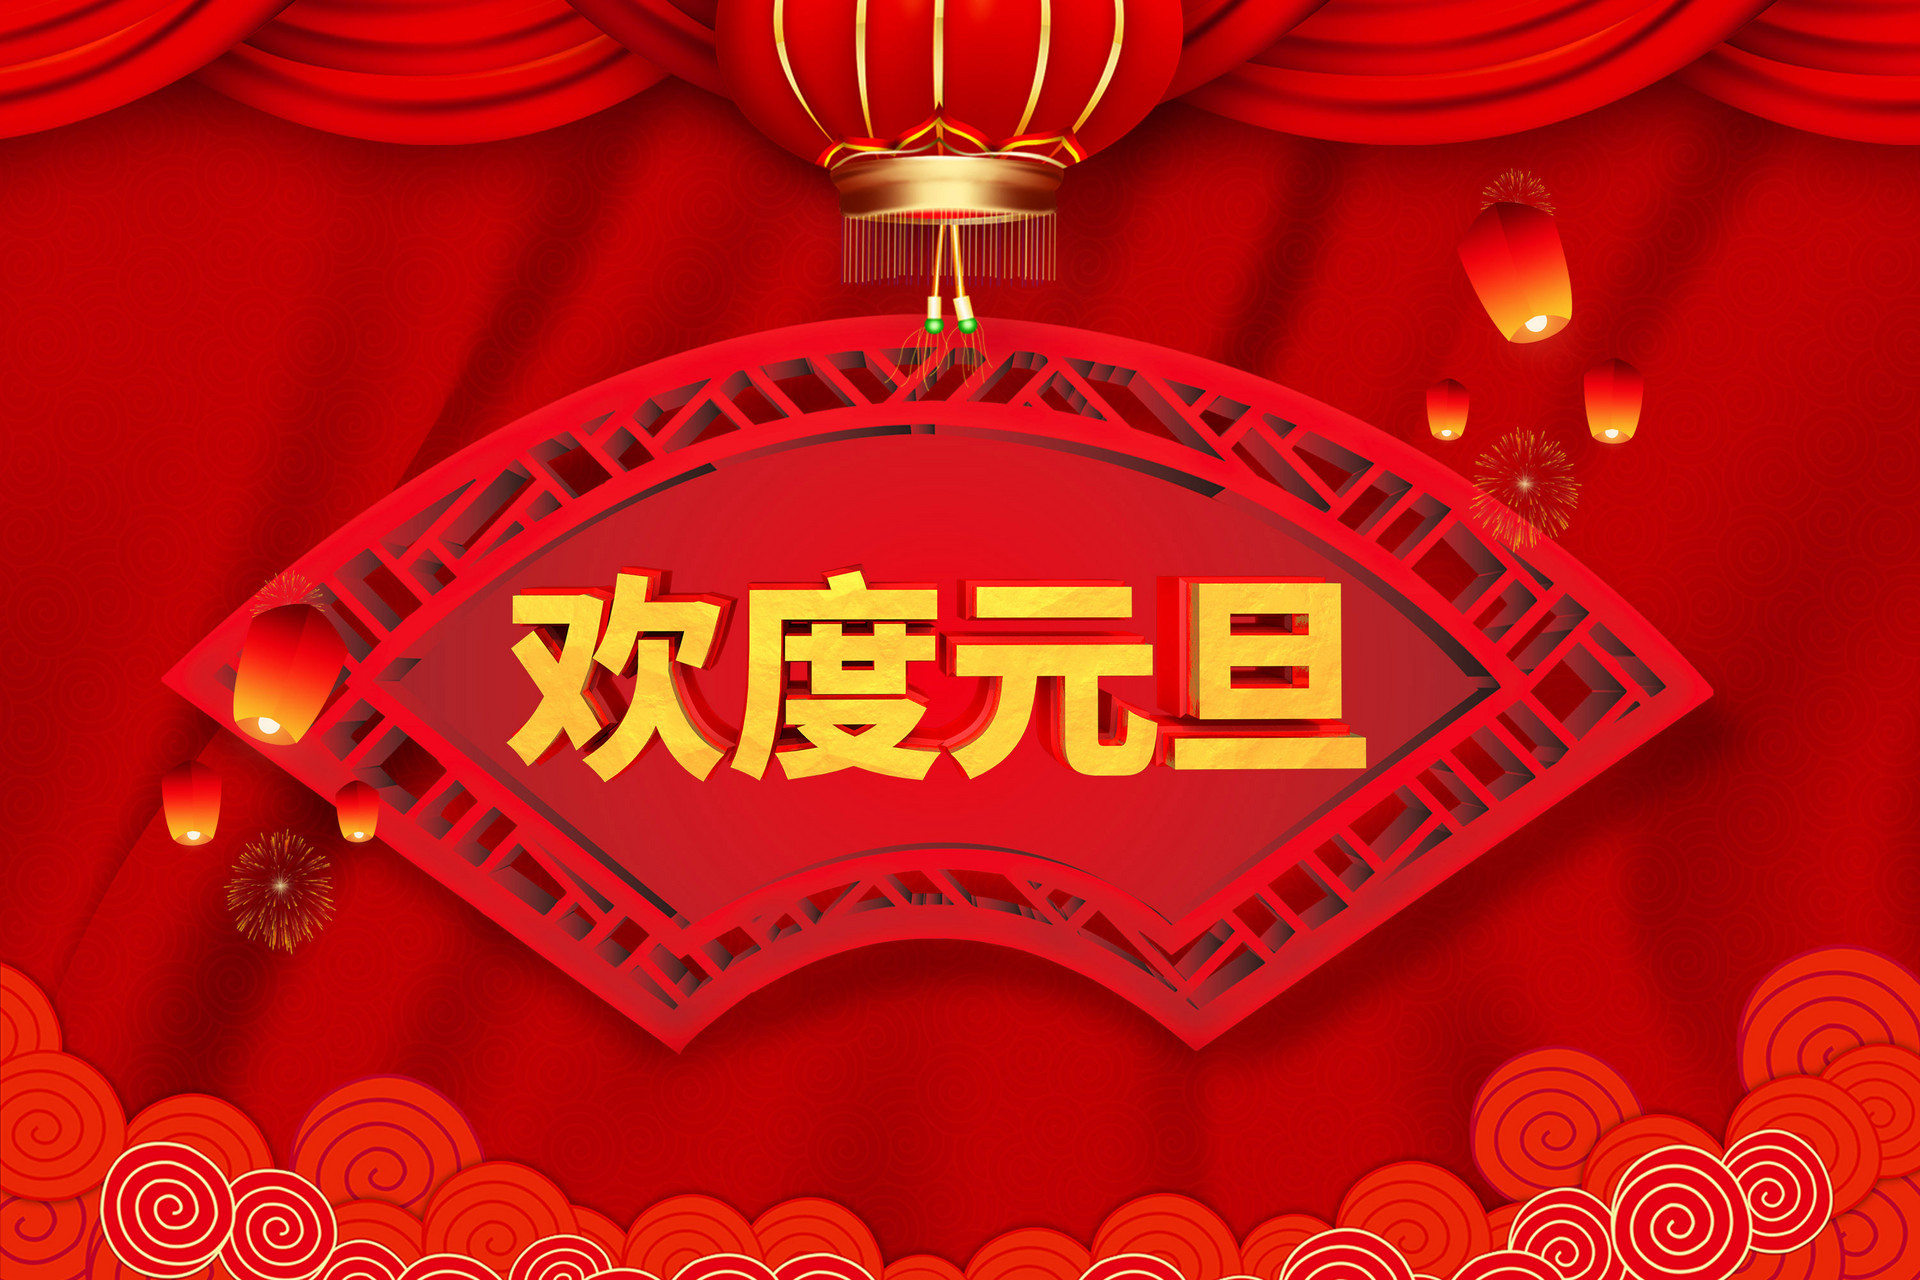 上海新利体育18點焊機公司2019年元旦放假通知